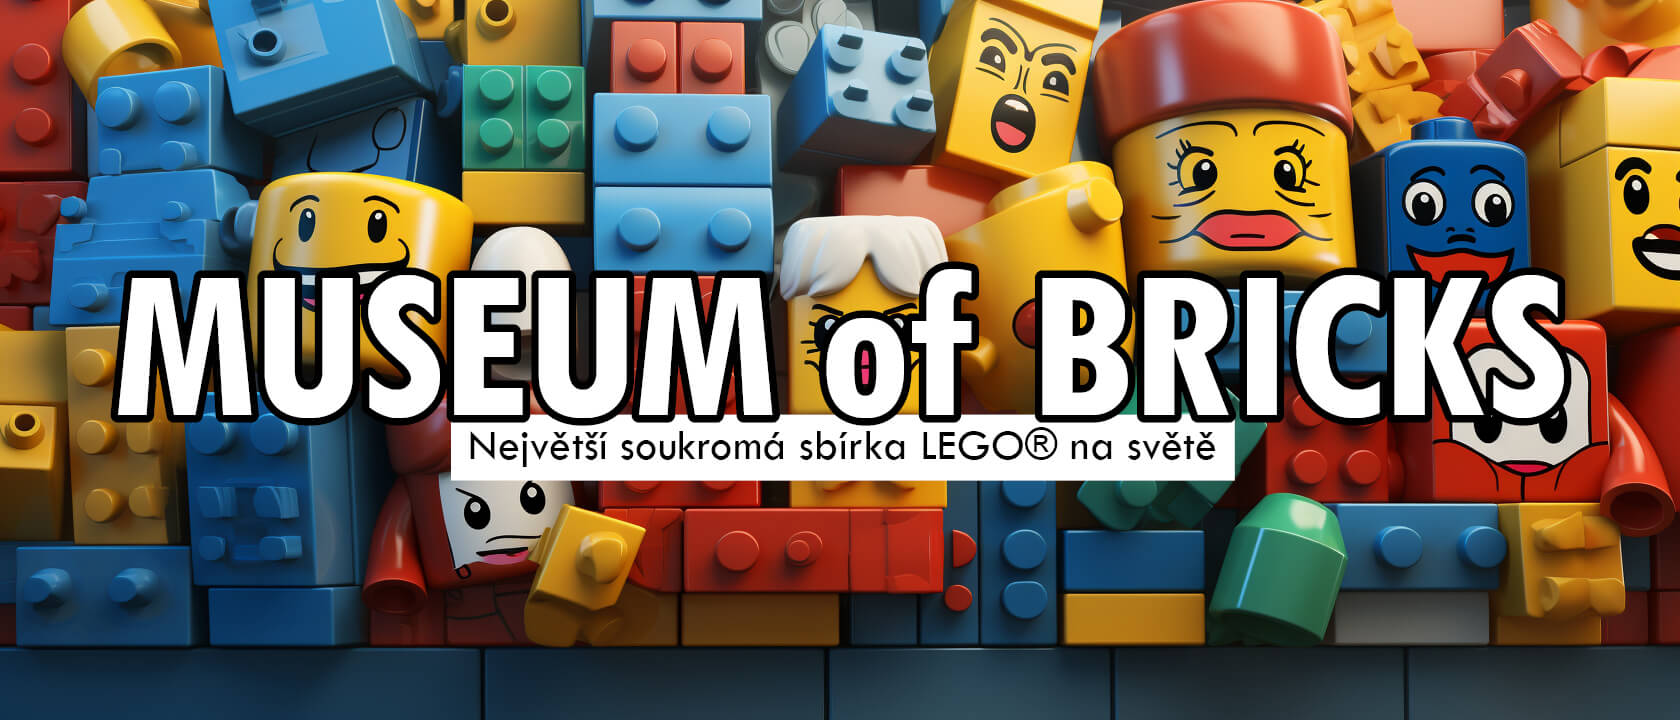 Museum of Bricks - největší soukromá sbírka LEGO® na světě